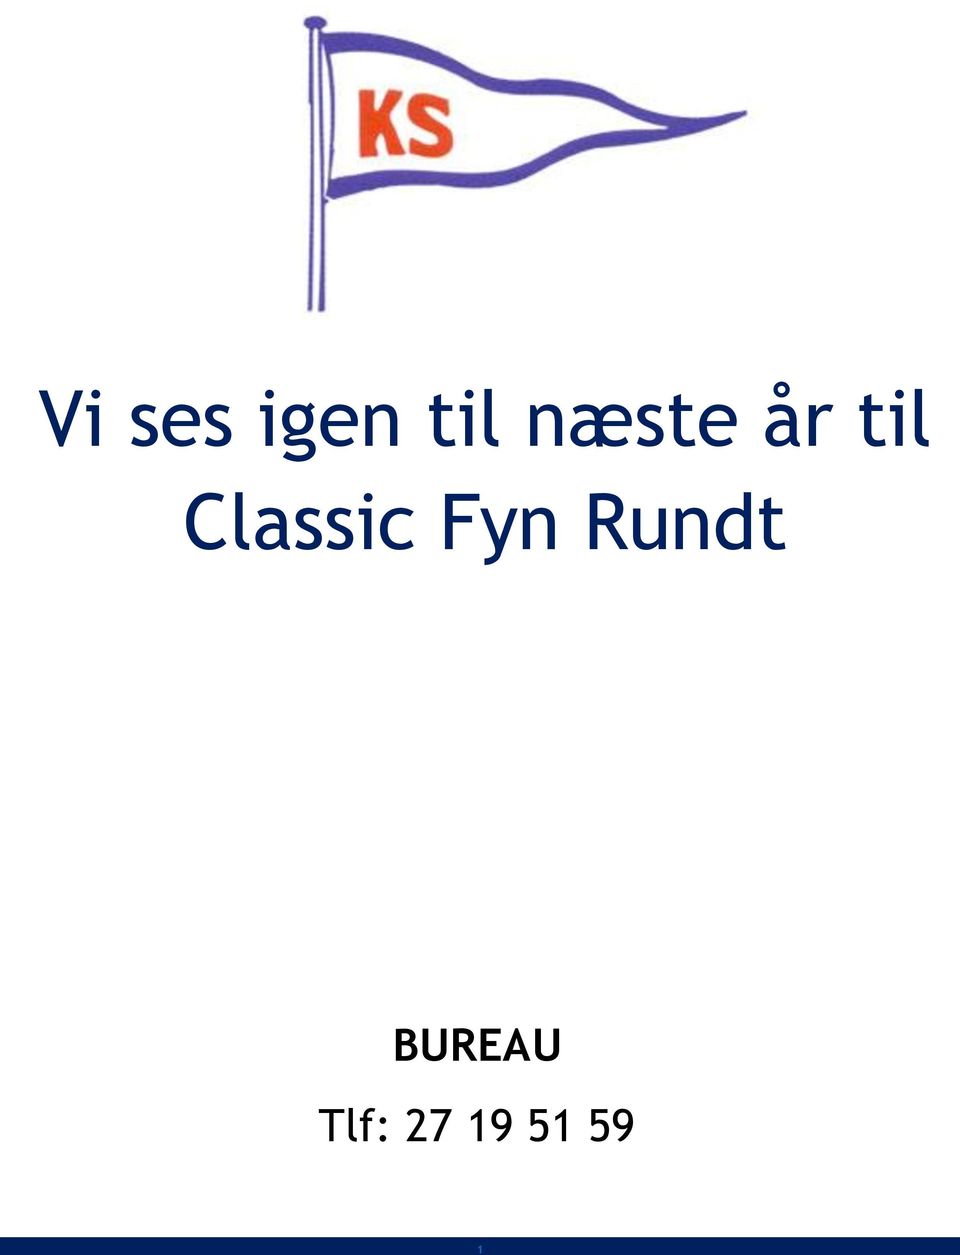 Classic Fyn Rundt